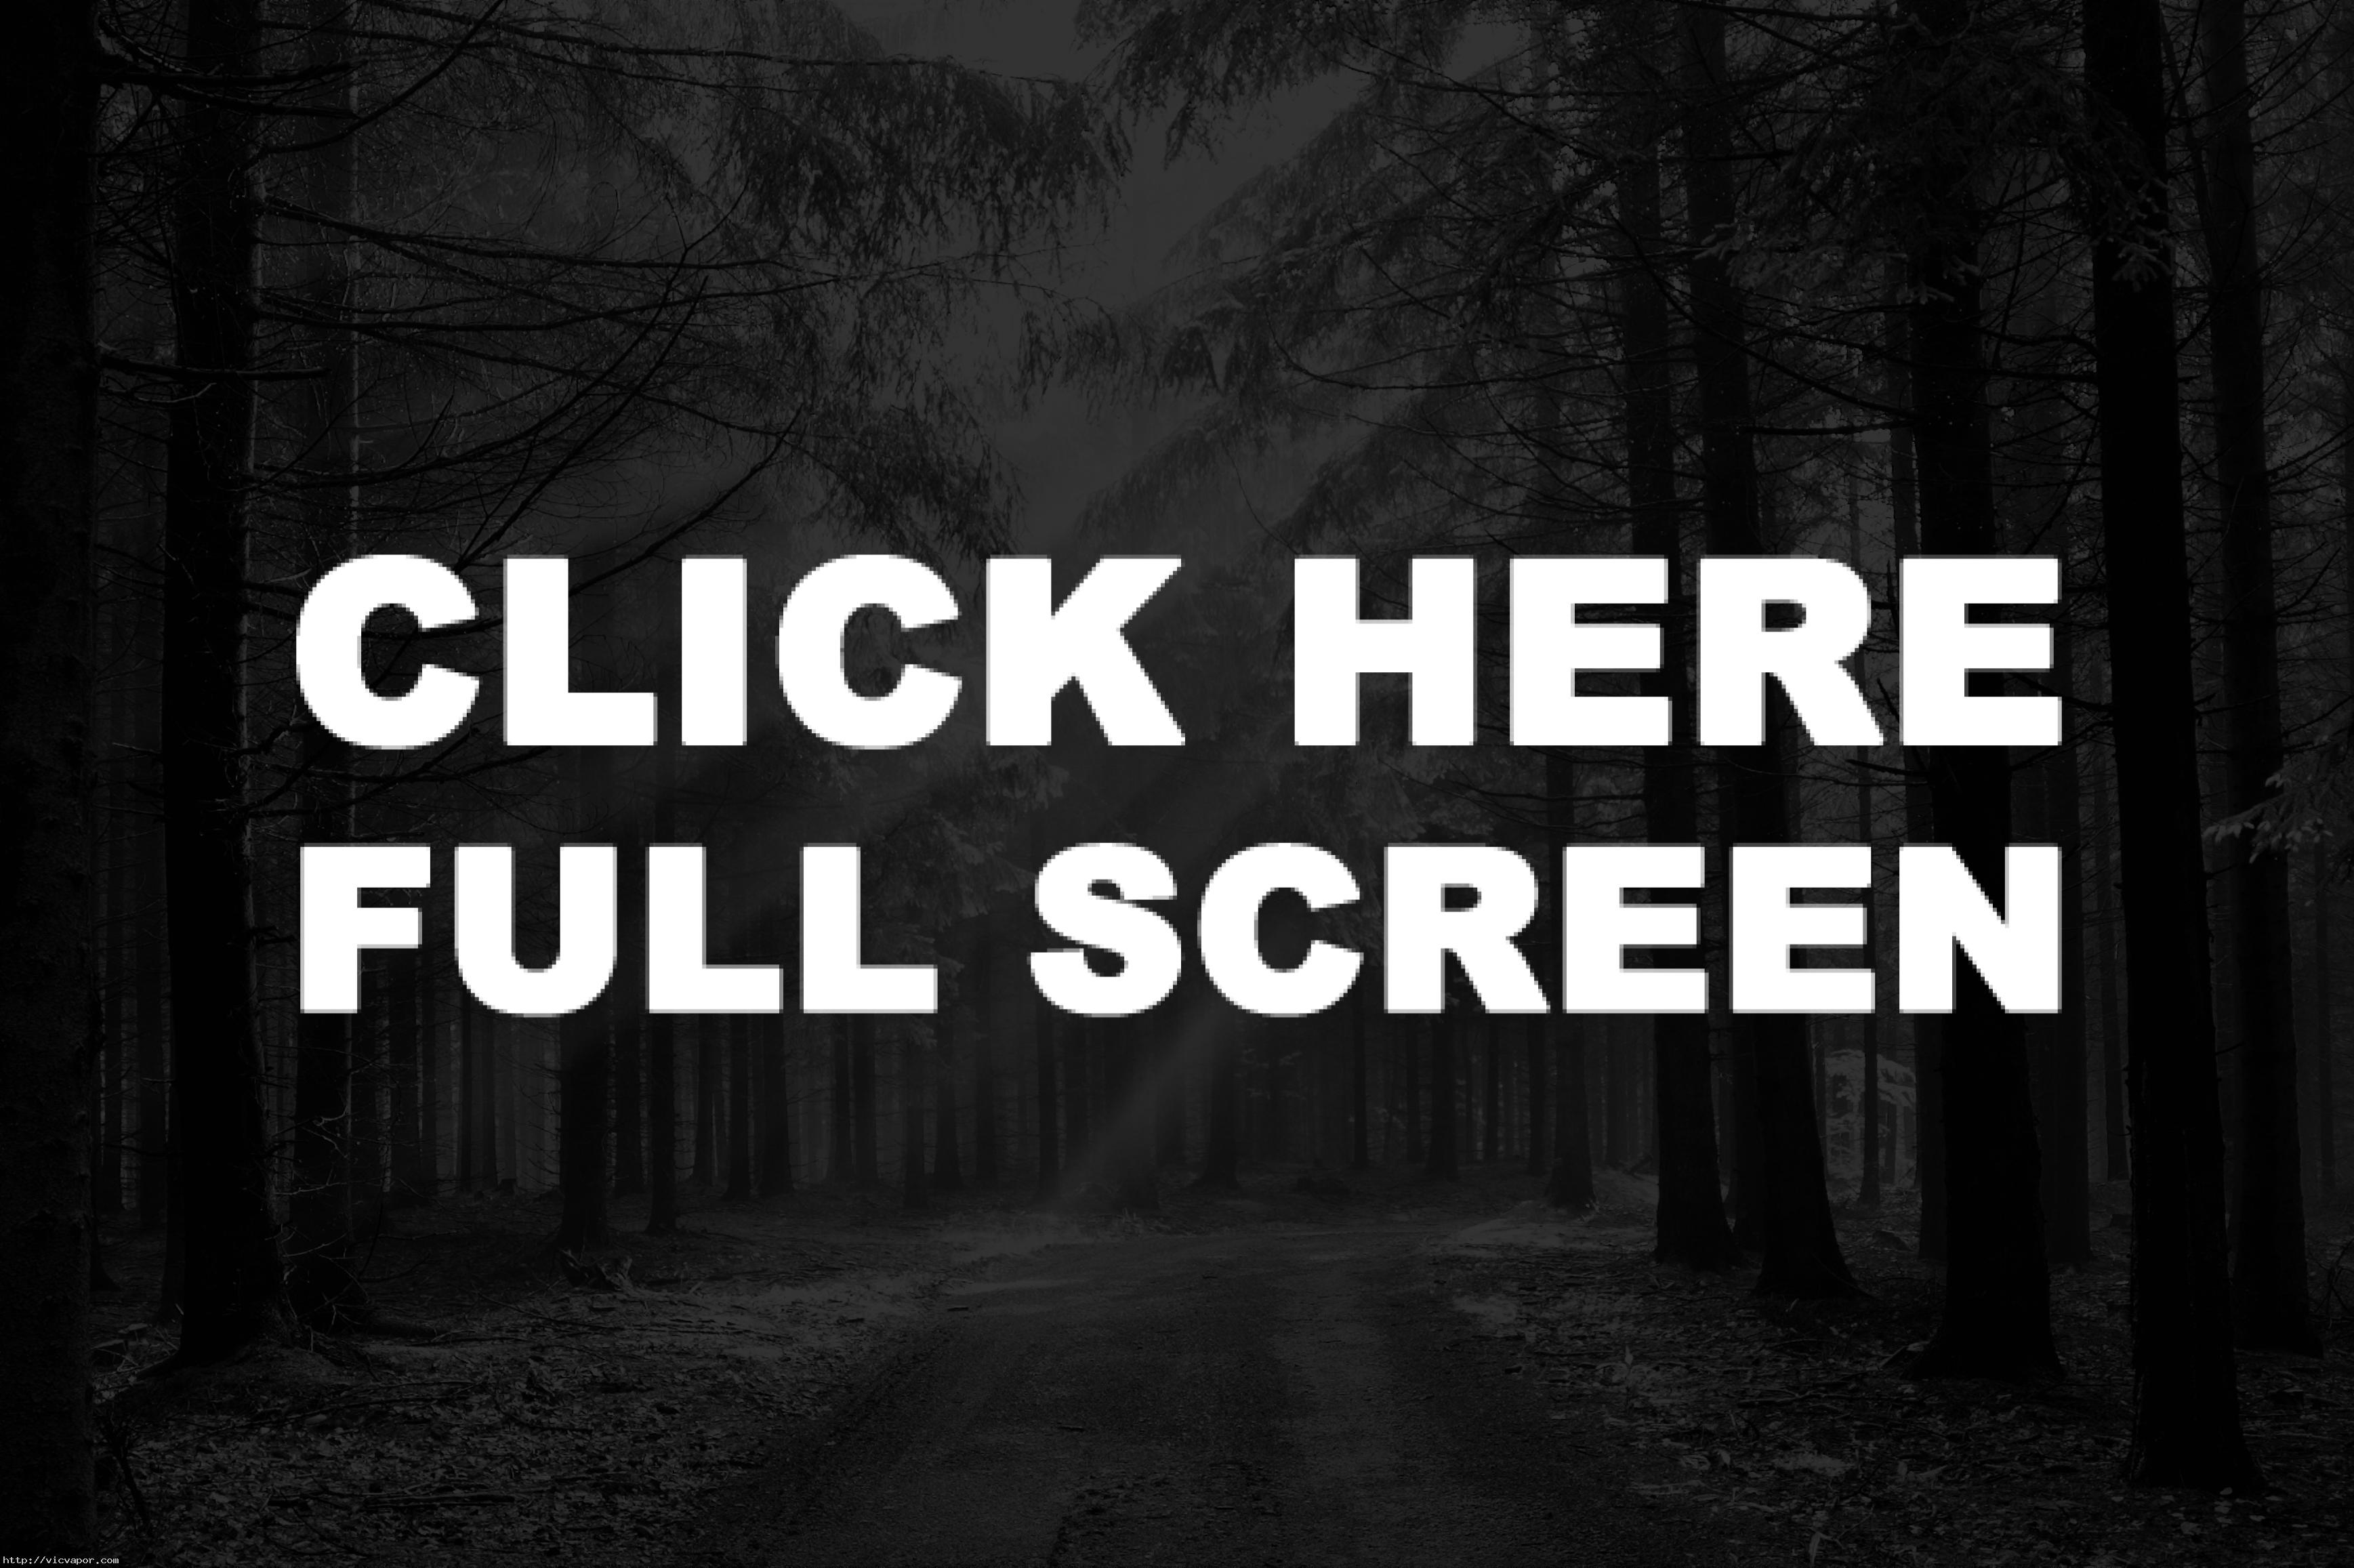 Nocturnal Animals Watch 1080P Online 2016 Film